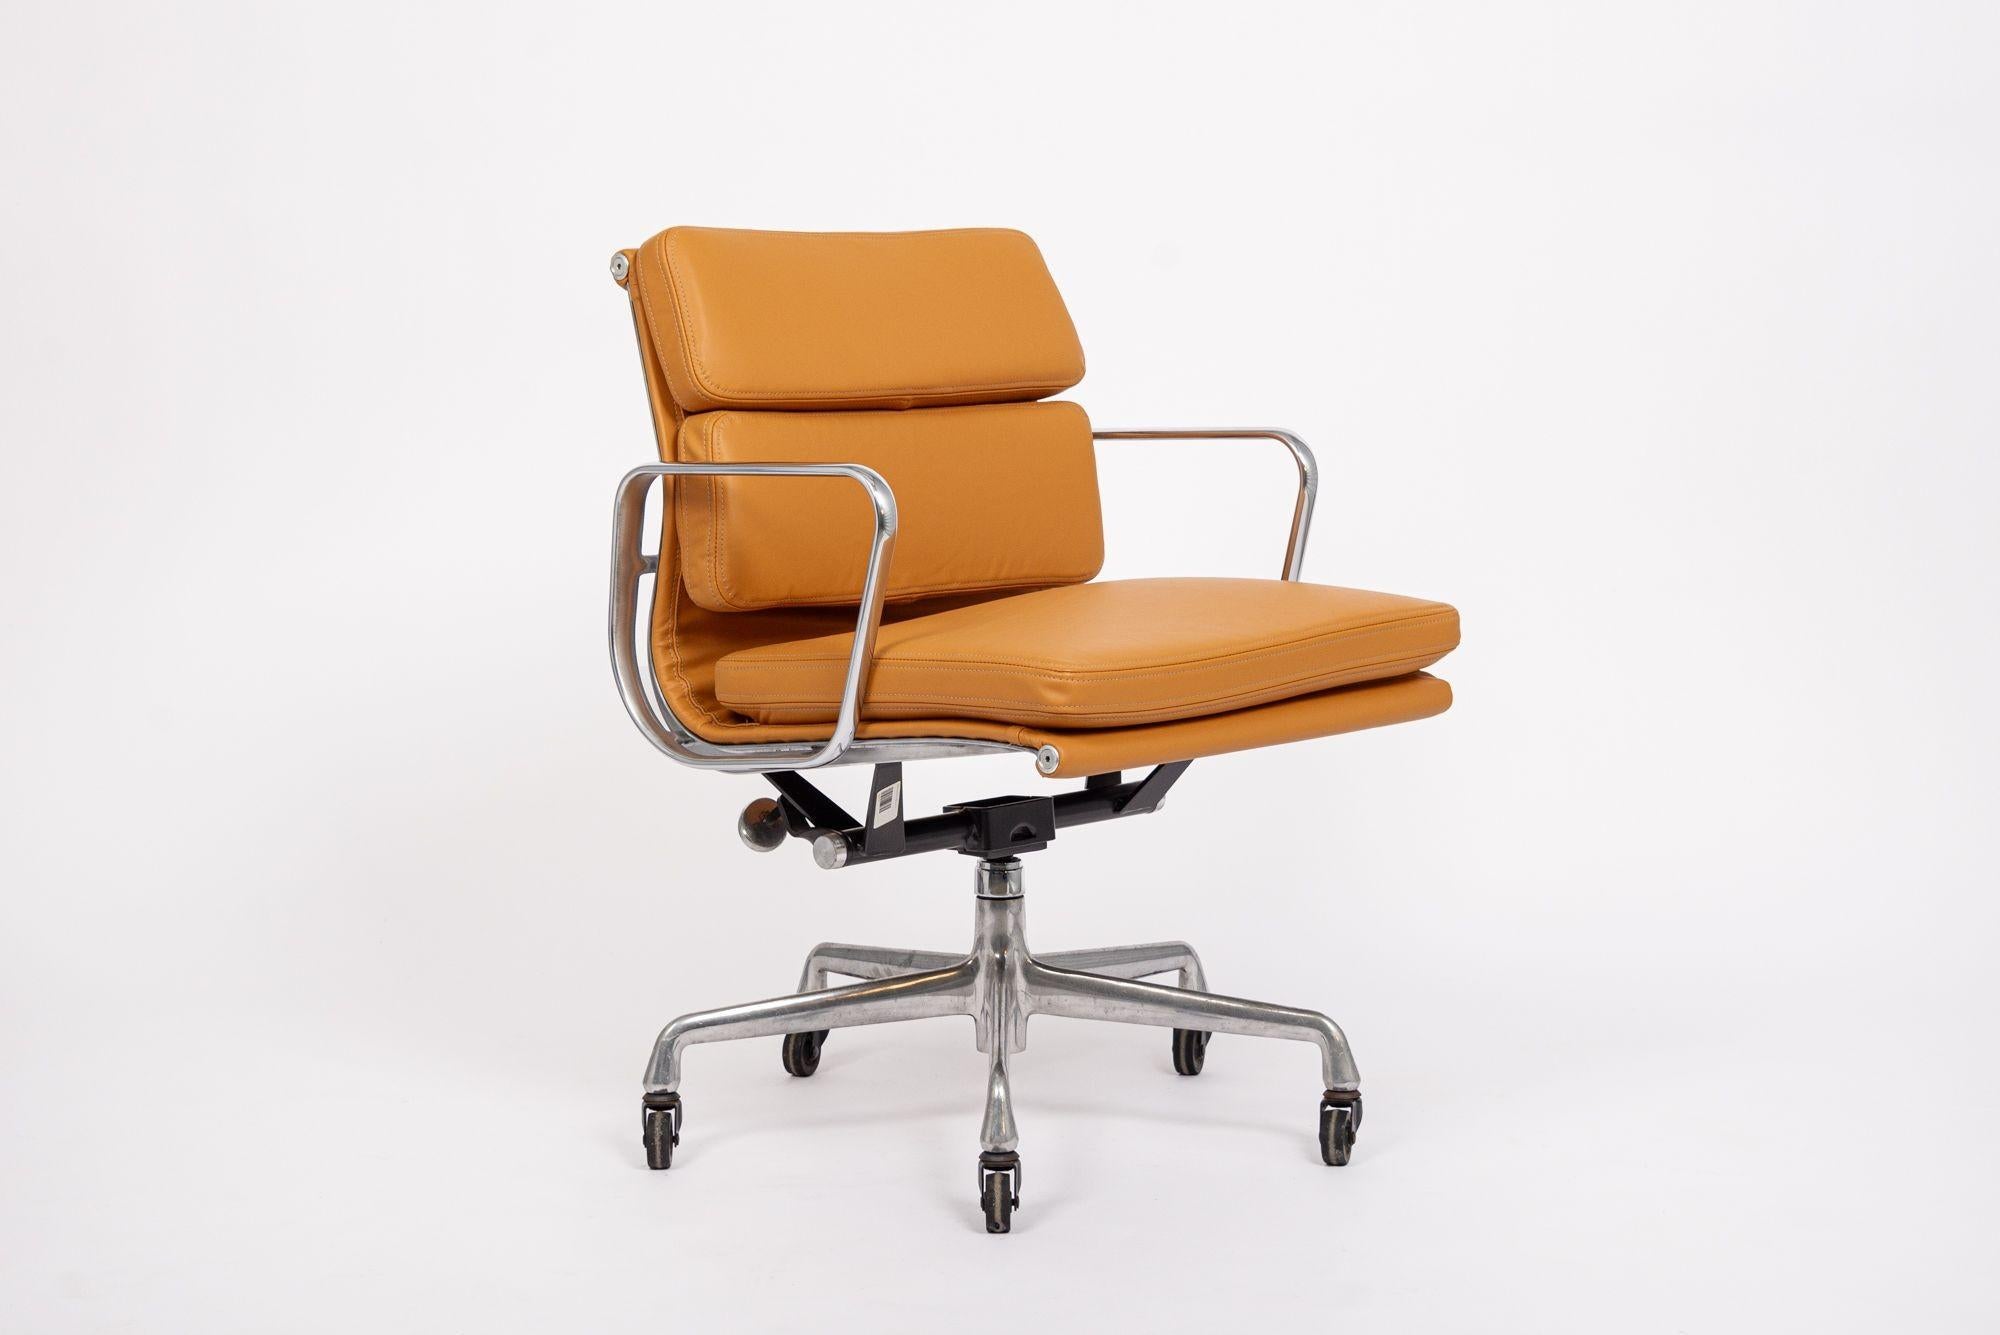 Dieser authentische Eames für Herman Miller Soft Pad Management Height senf-orange-braune Leder-Bürostuhl aus der Aluminum Group Collection'S wurde in den 2000er Jahren hergestellt. Dieser klassische, moderne Bürostuhl aus der Mitte des Jahrhunderts